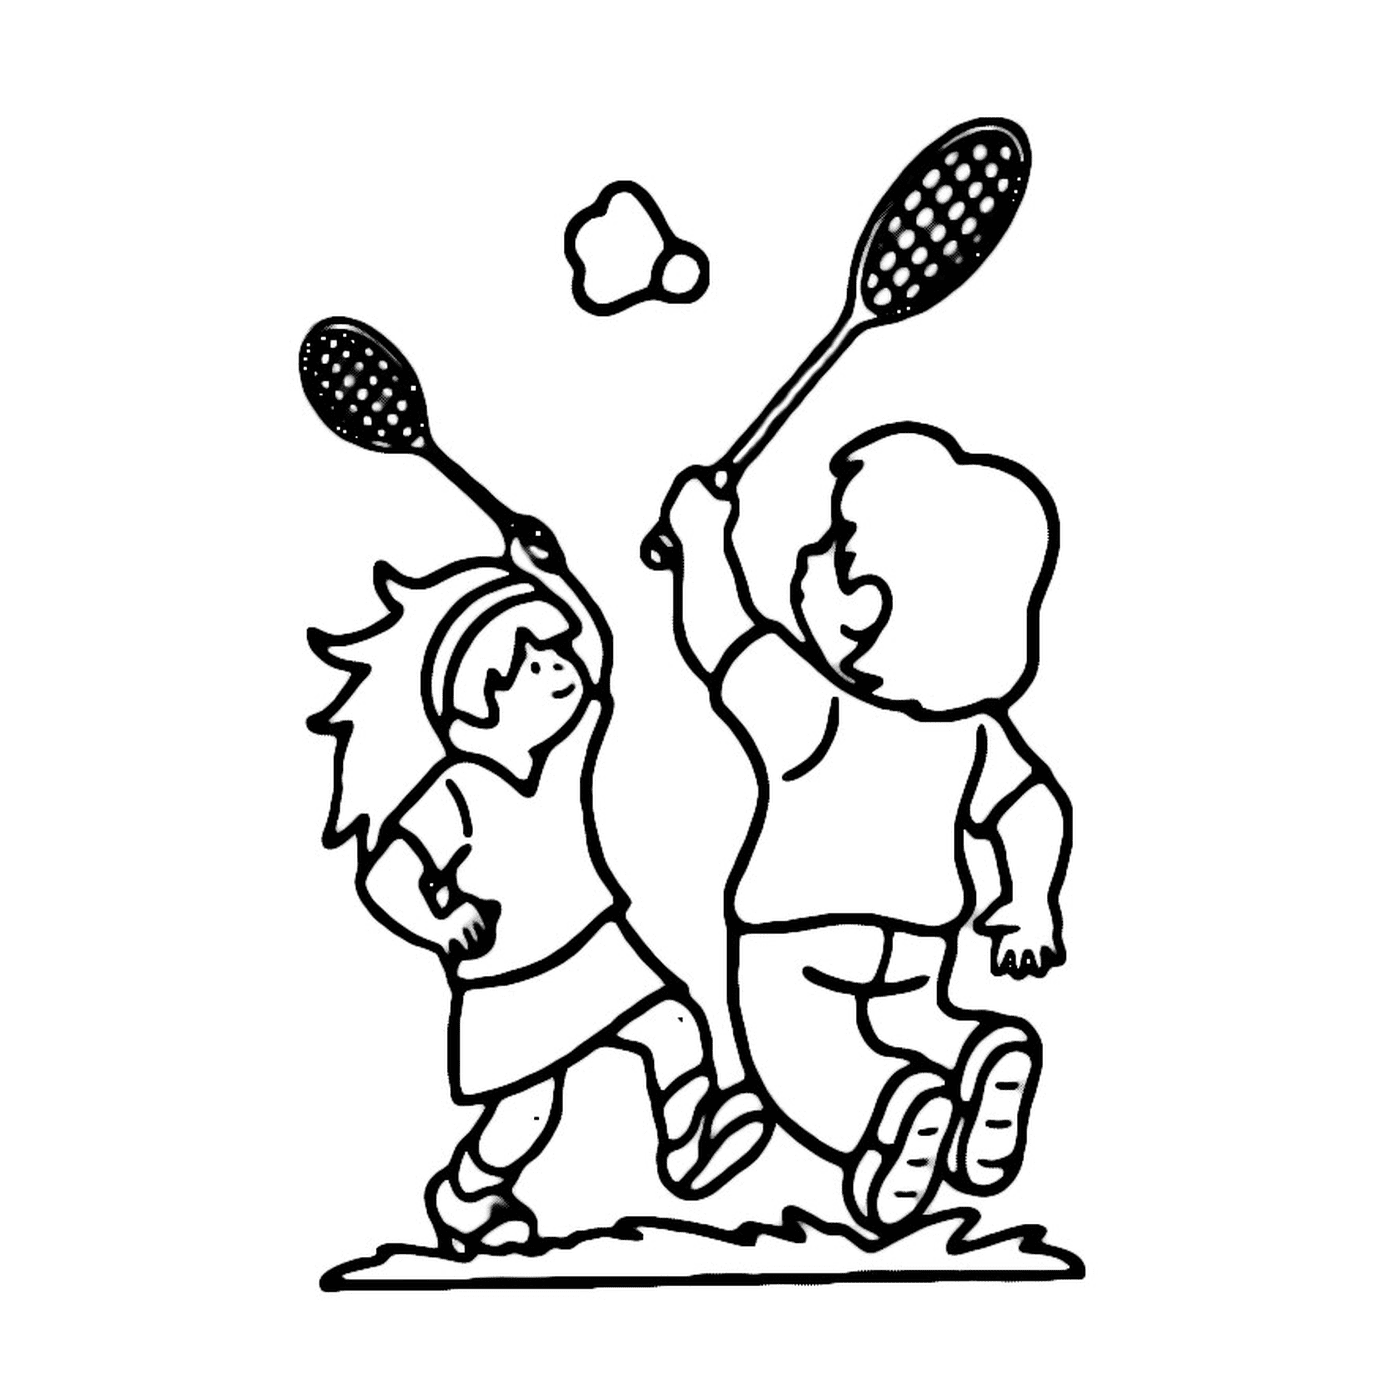  Duas crianças jogam badminton em um campo 